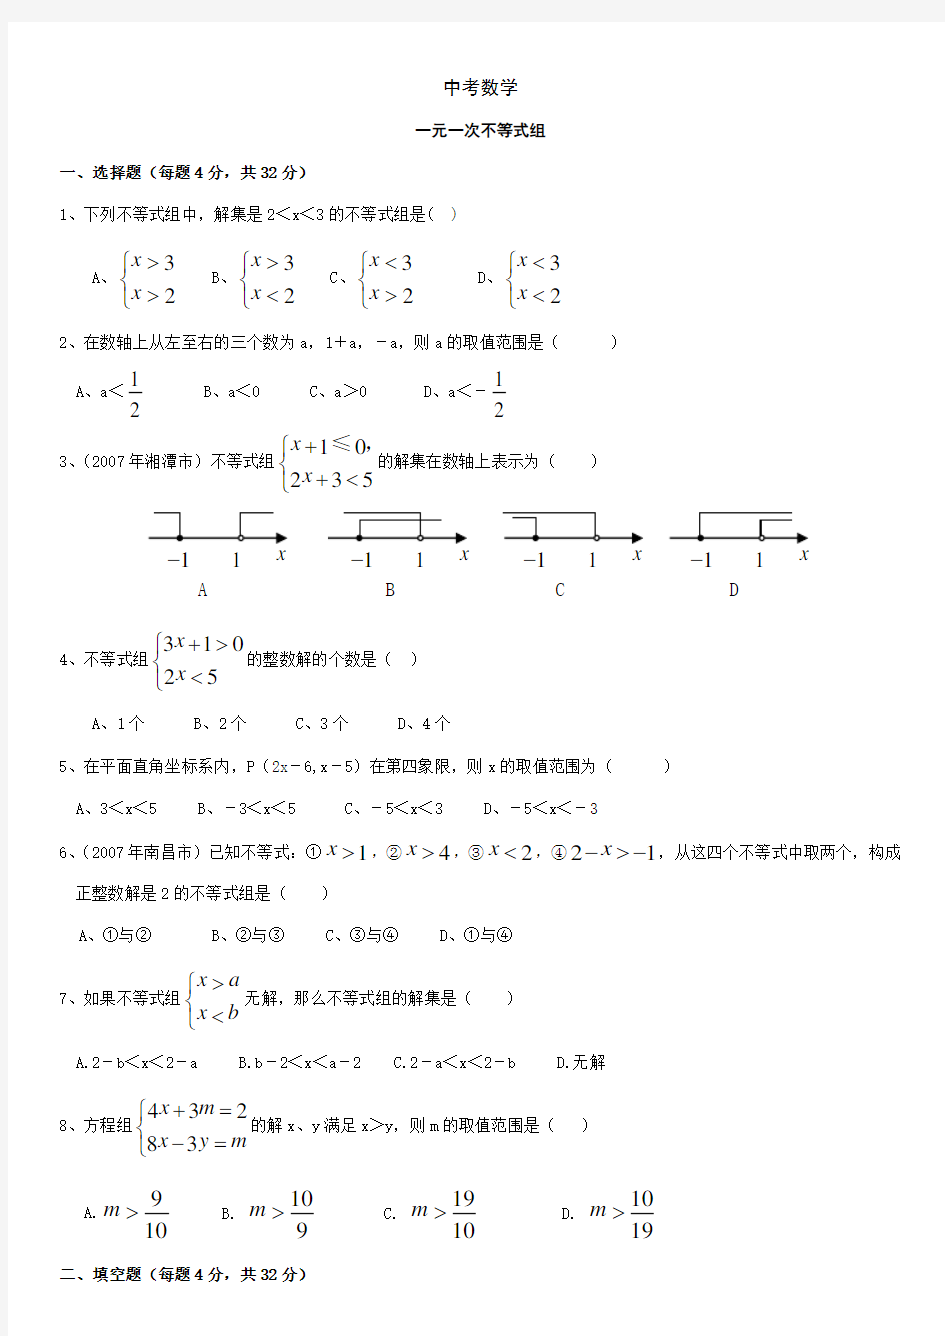 中考数学-一元一次不等式组练习题(含答案)